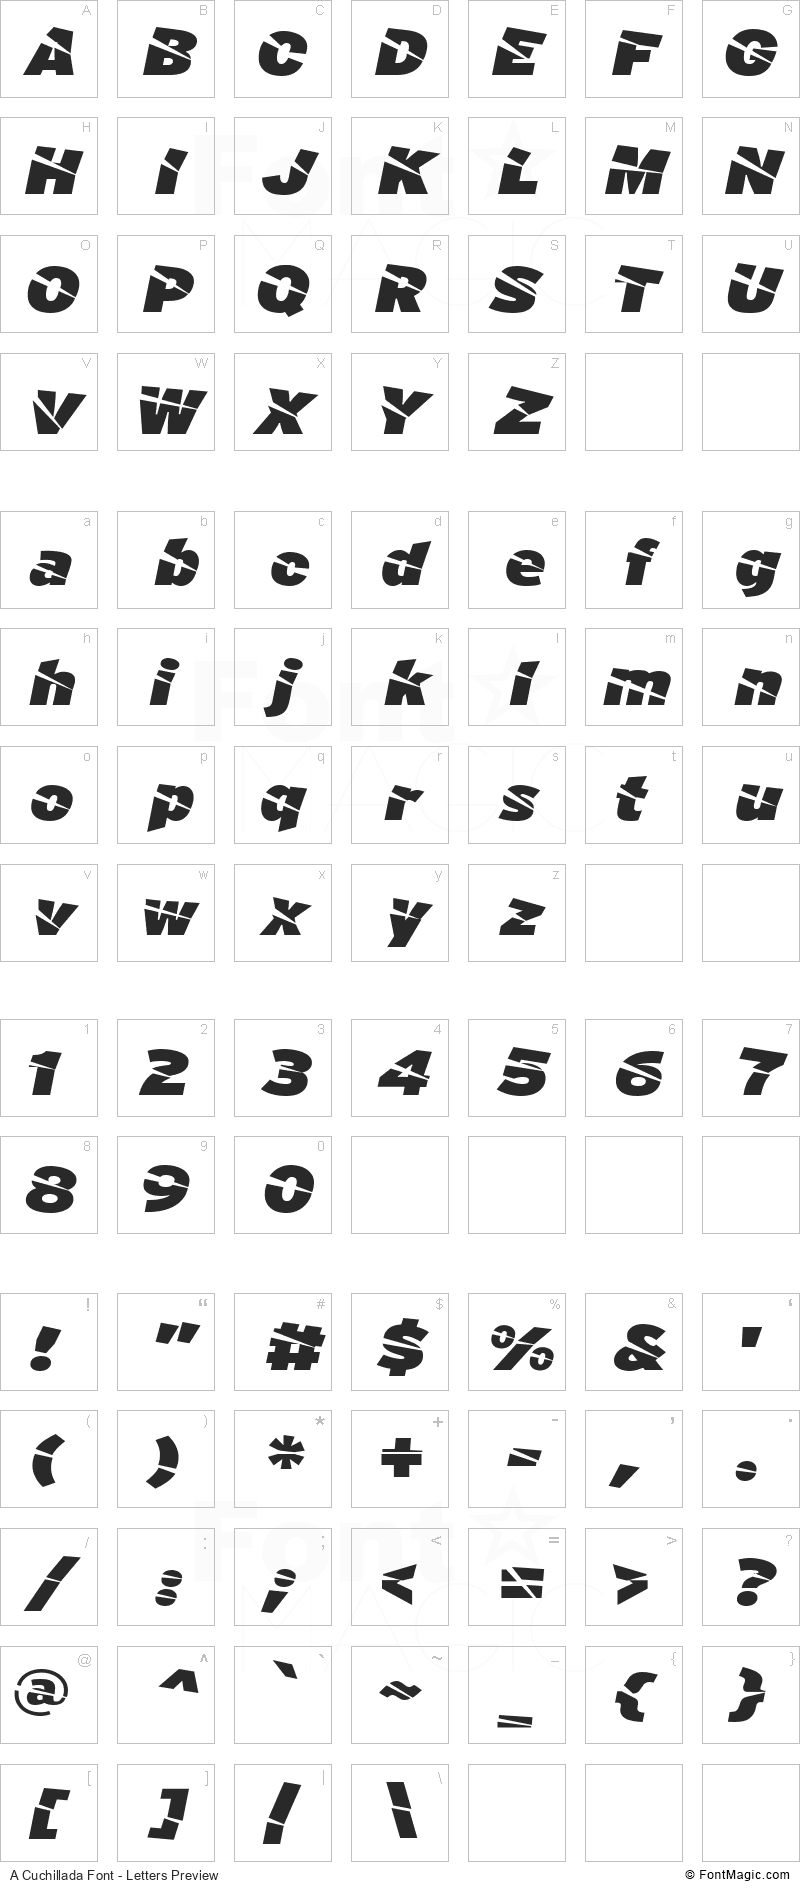 A Cuchillada Font - All Latters Preview Chart